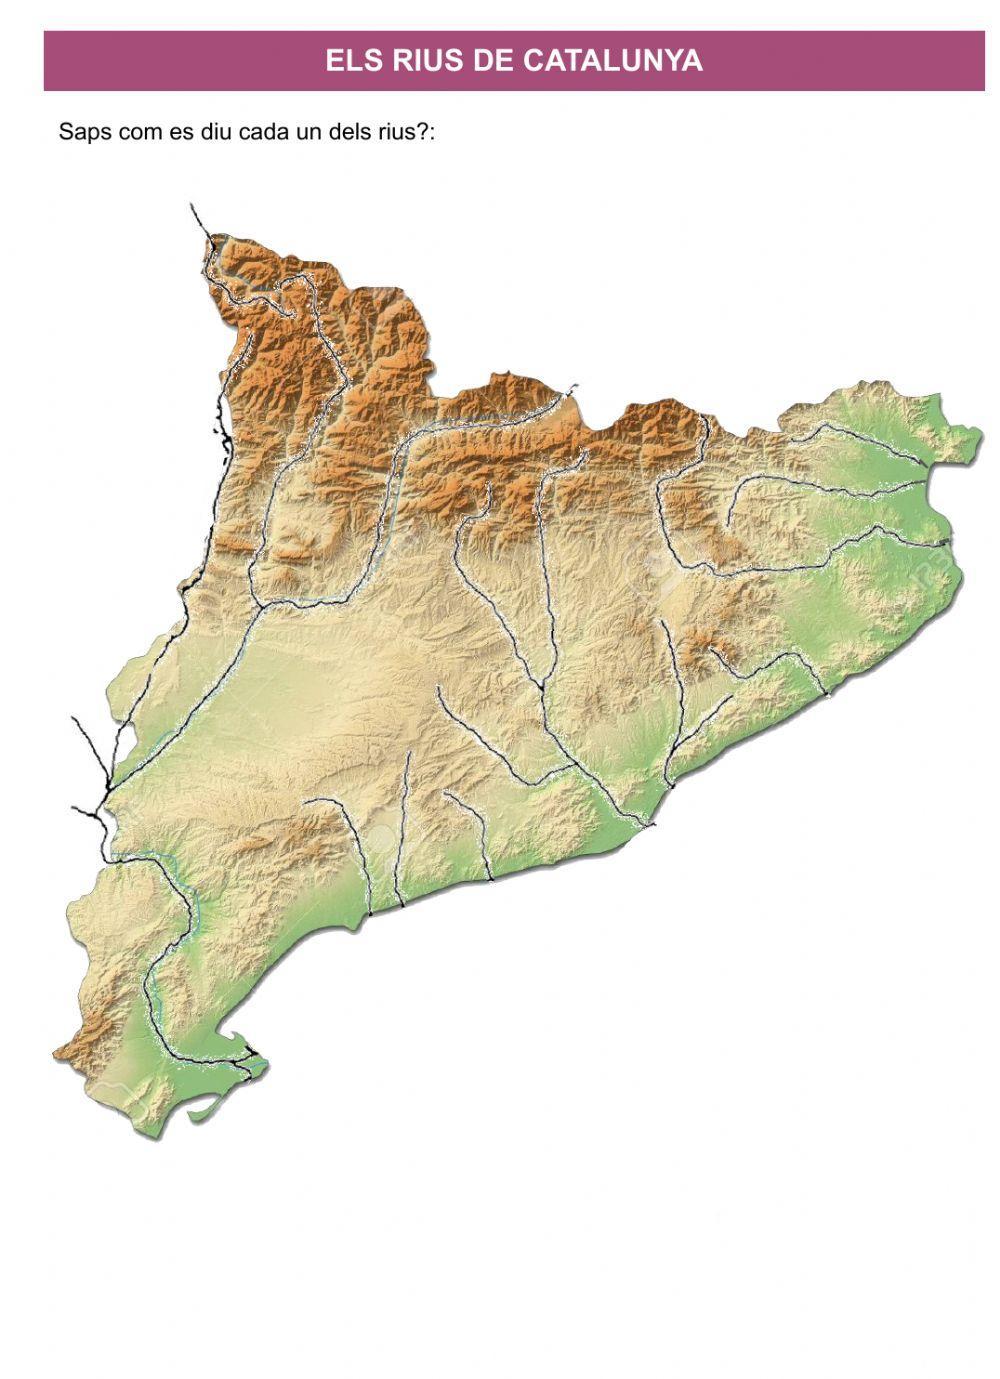 Els rius de catalunya